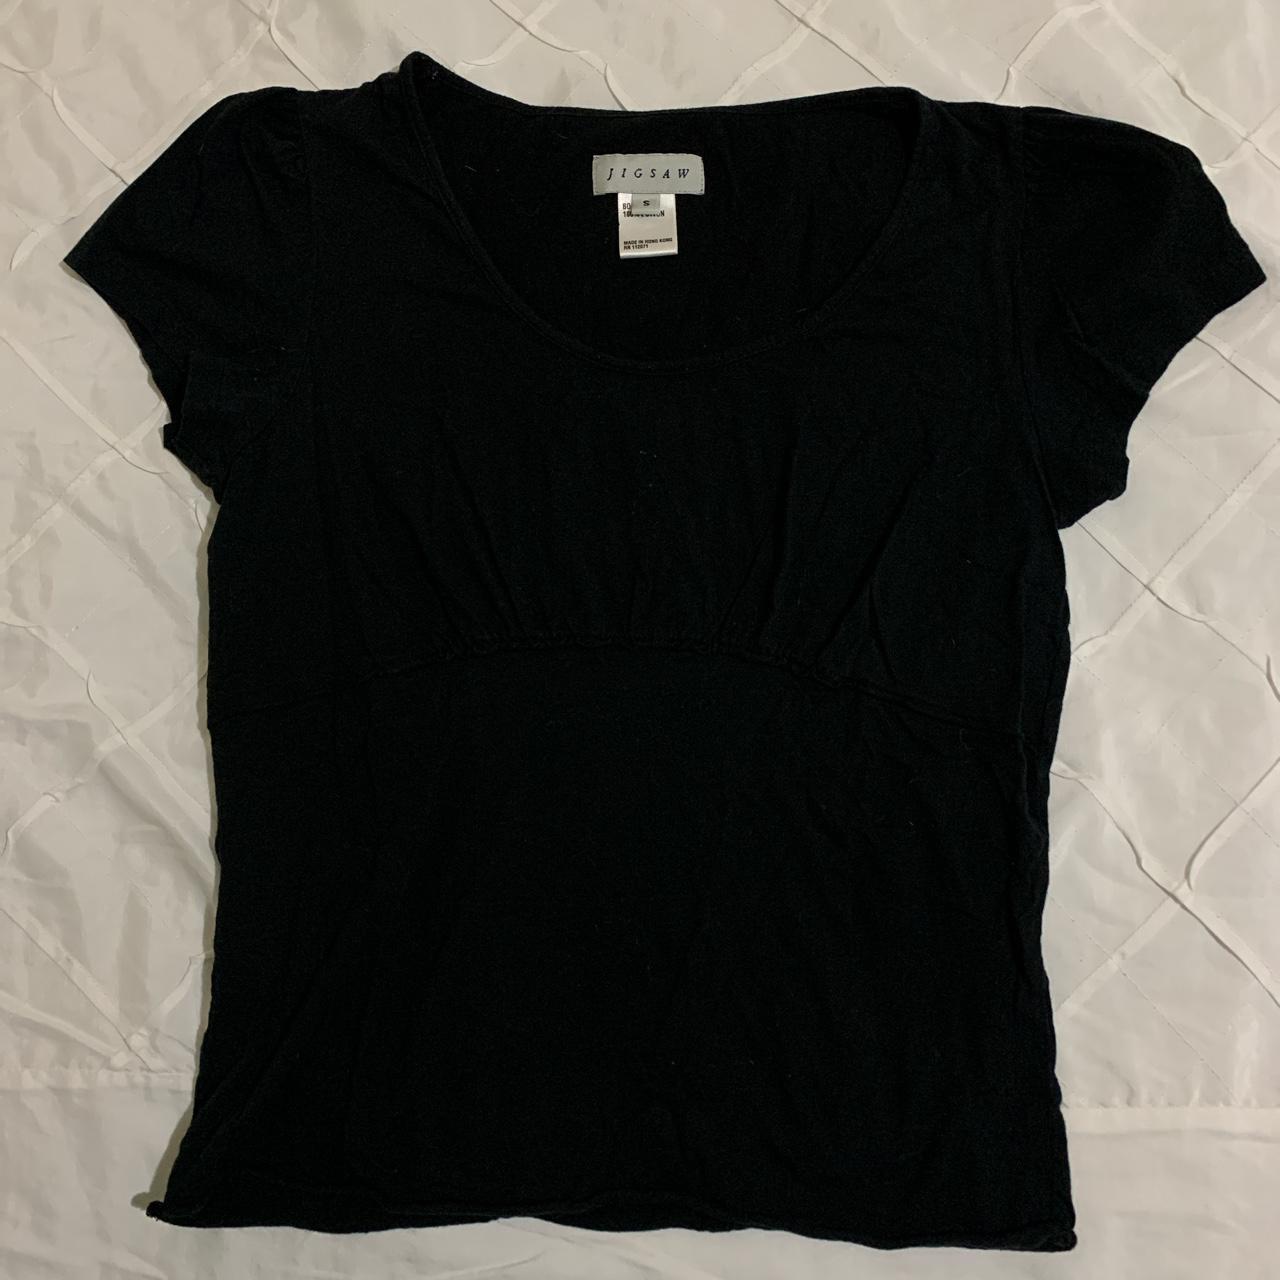 Product Image 1 - black basic shirt from jigsaw